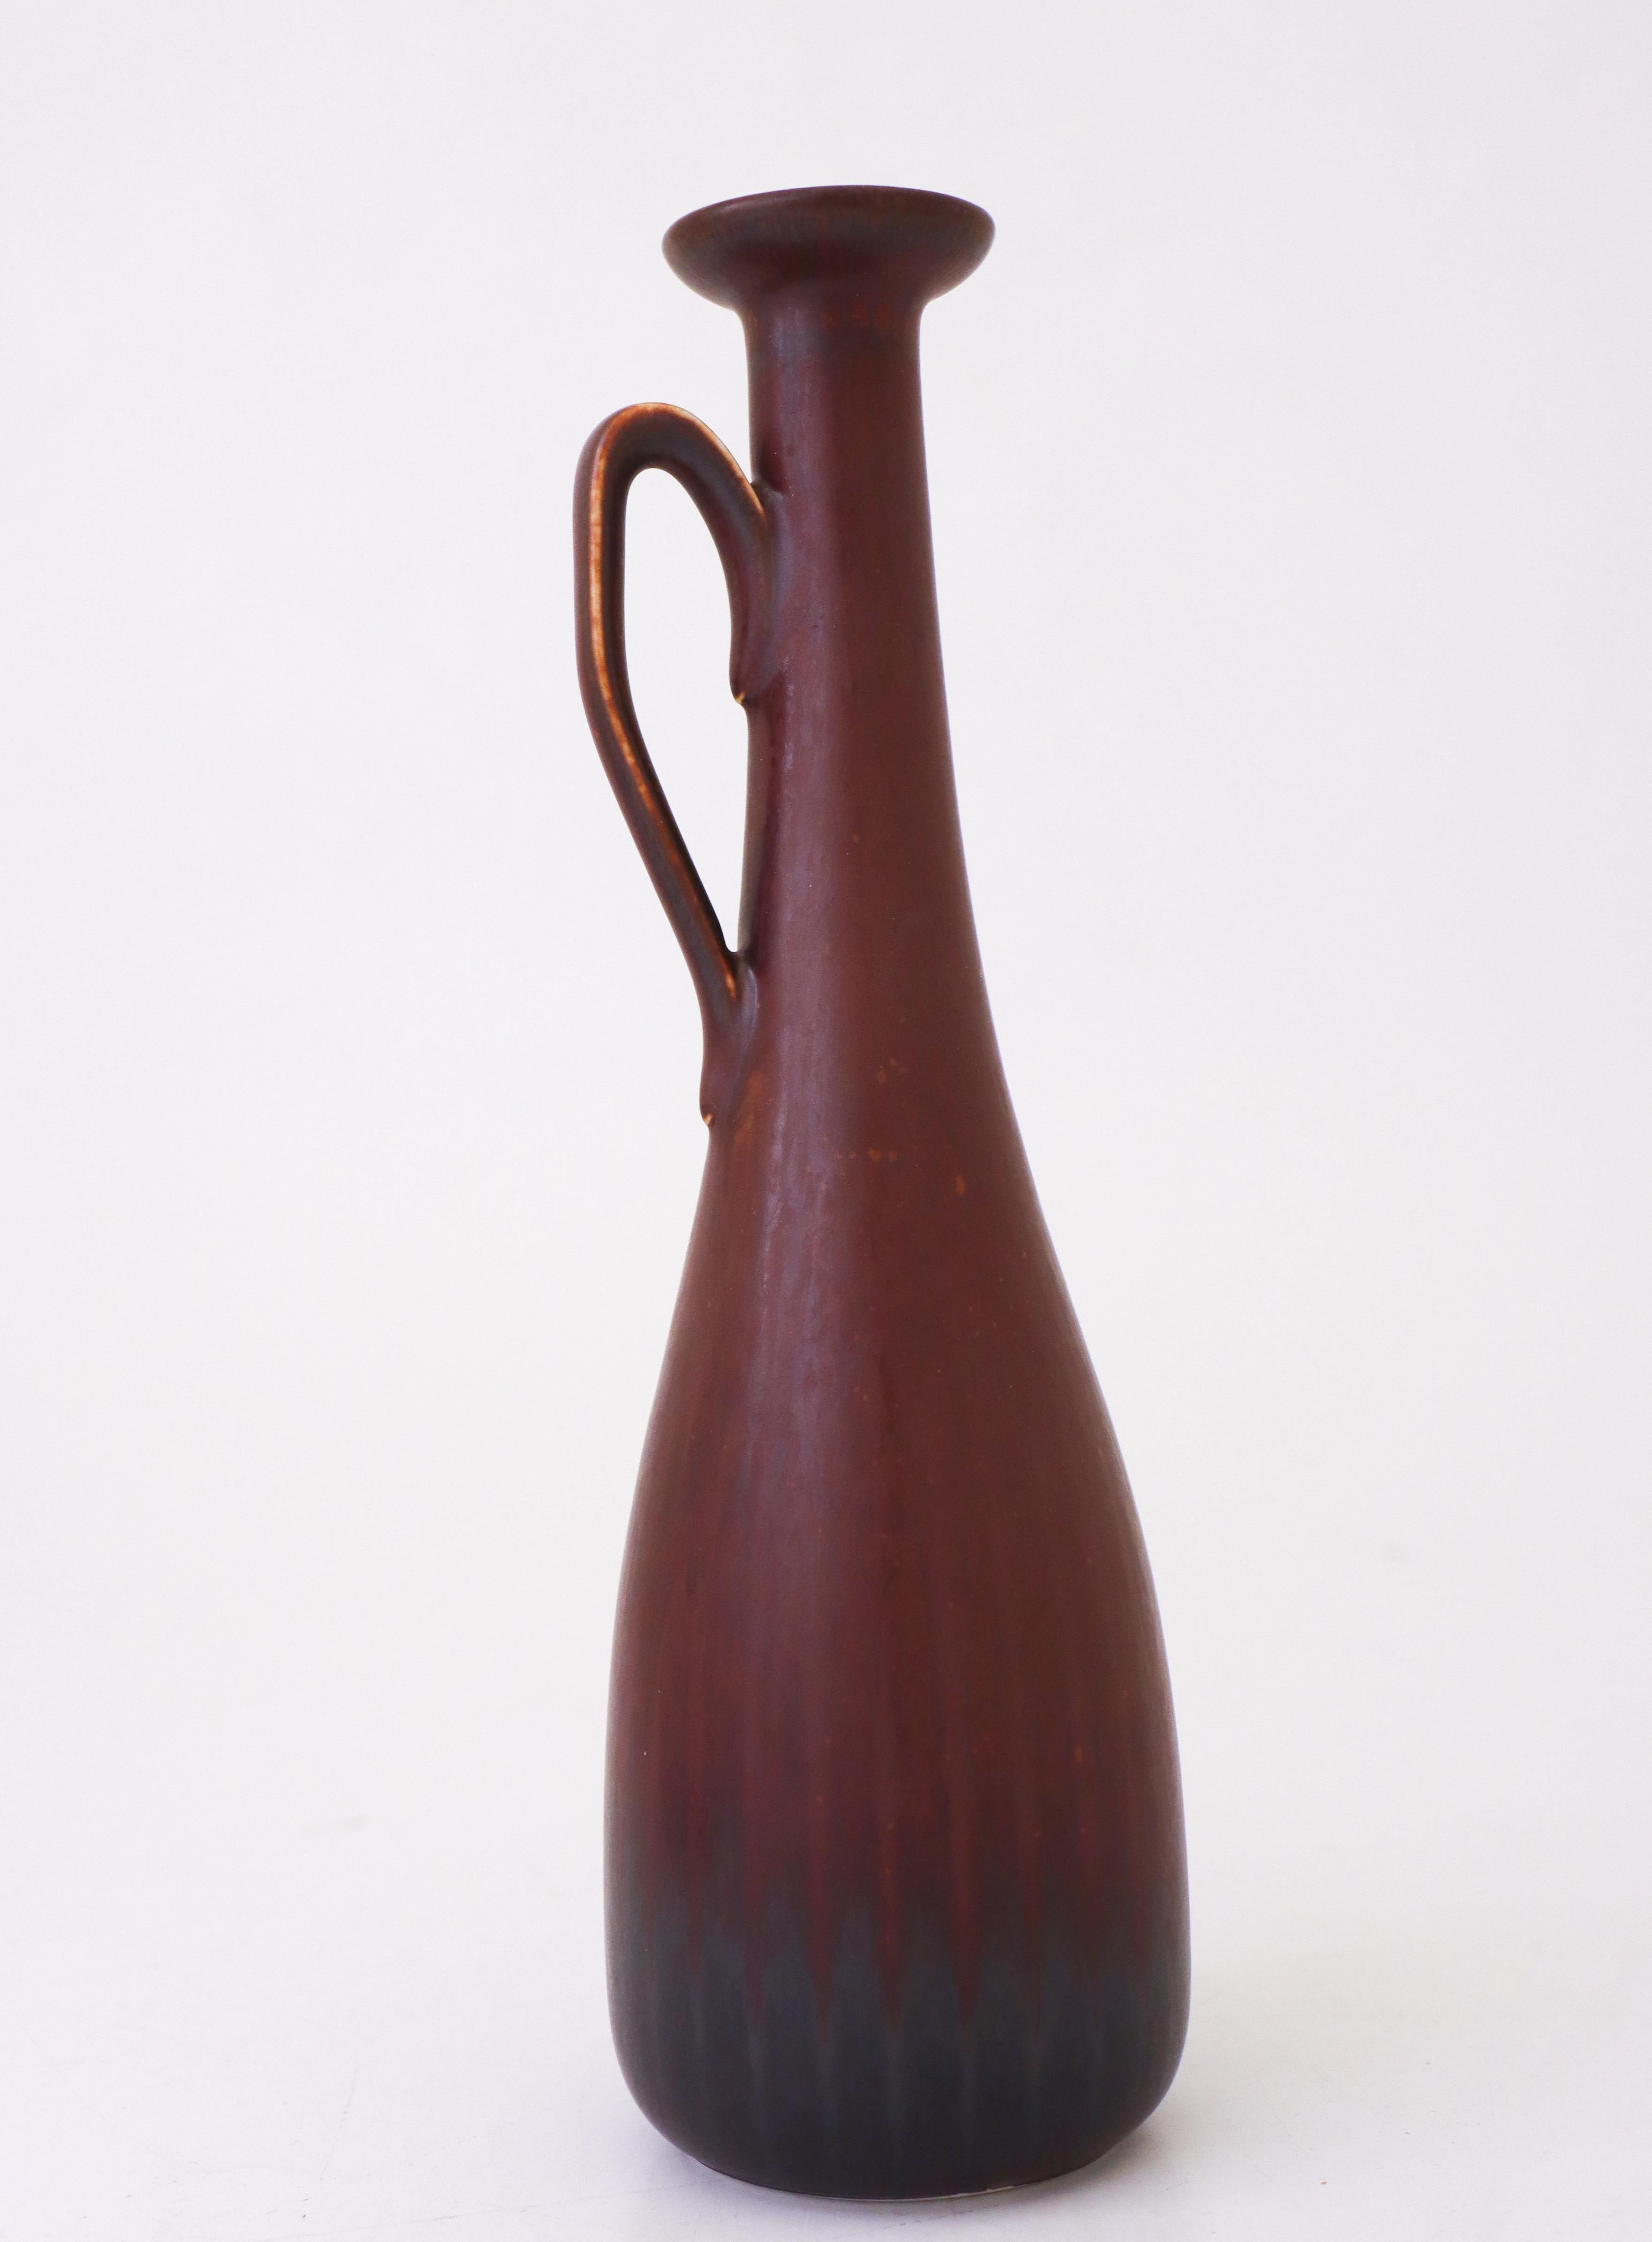 Ce vase brun, conçu par Gunnar Nylund chez Rörstrand, mesure 25 cm de haut et 7 cm de diamètre. Il est en parfait état et marqué comme étant de première qualité. 

Gunnar Nylund est né à Paris en 1904 de parents sculpteurs et designers. Il a donc